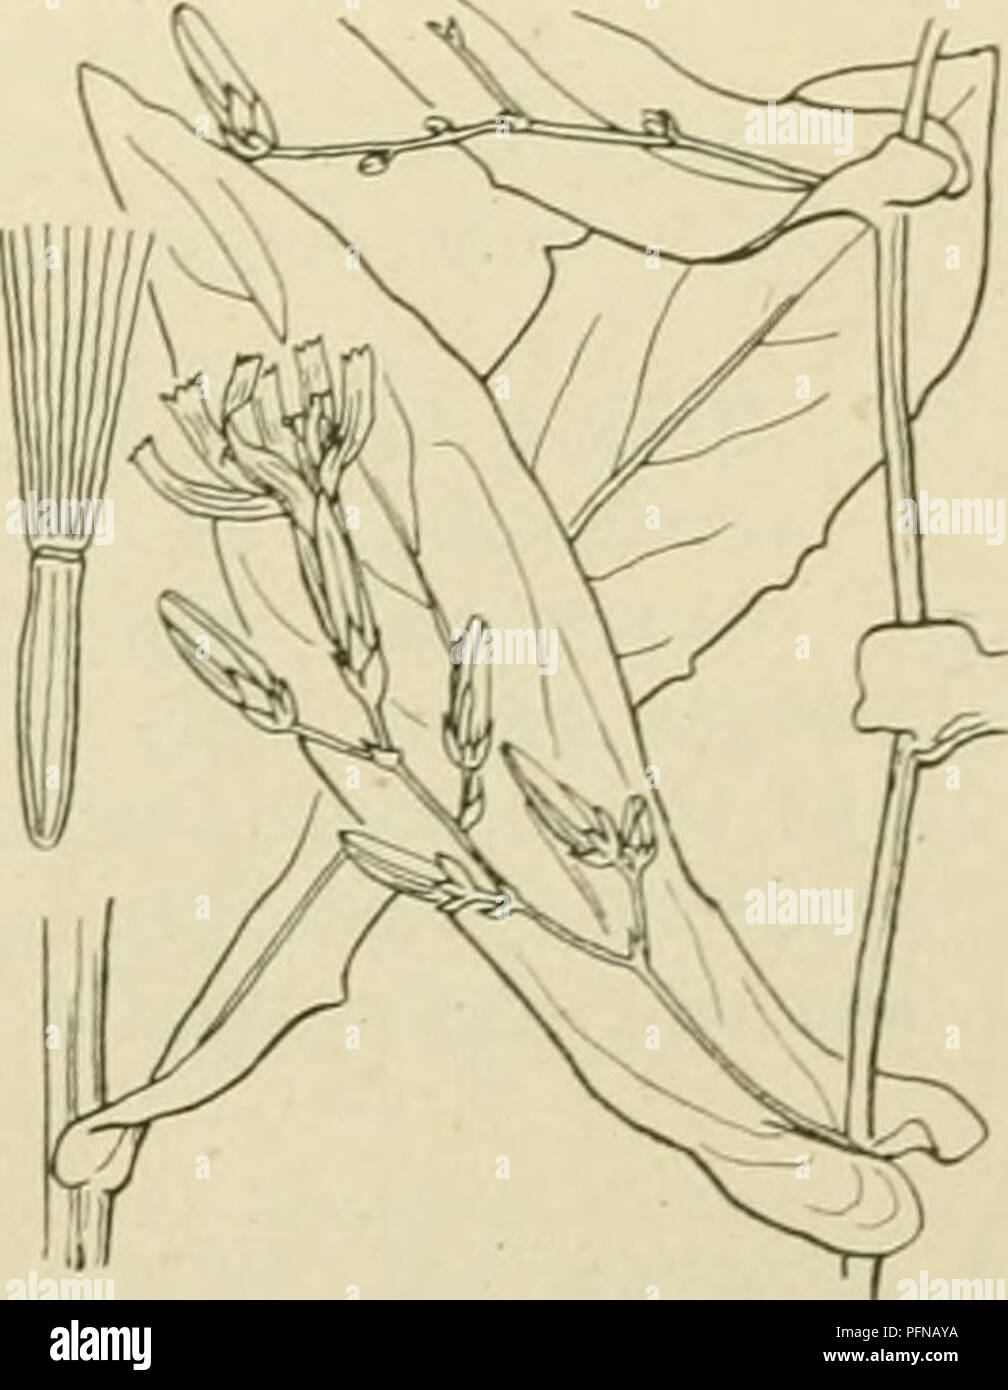 . De flora van Nederland. Plants. Chondrilla juncea 59. Prenanthes'') L. P. purpürea') L. Prenanthes (fig. 576). Deze plant is kaal en heeft een korten wortelstok, waaruit een rechtopstaande, enkel- voudige of naar boven vertakte stengel komt, die sterk bebladerd is. De bladen zijn teer, van onderen blauwgroen, met hartvormigen voet stengelomvattend, de onderste zijn omgekeerd eirond of langwerpig, naar den voet sterk ver- smald, bochtig getand of bijna vinspletig, de bovenste lancet- vormig, toegespitst, gaafrandig. De hoofdjes zijn vrij klein, langgesteeld, eerst knikkend, smal cylindrisch,  Stock Photo